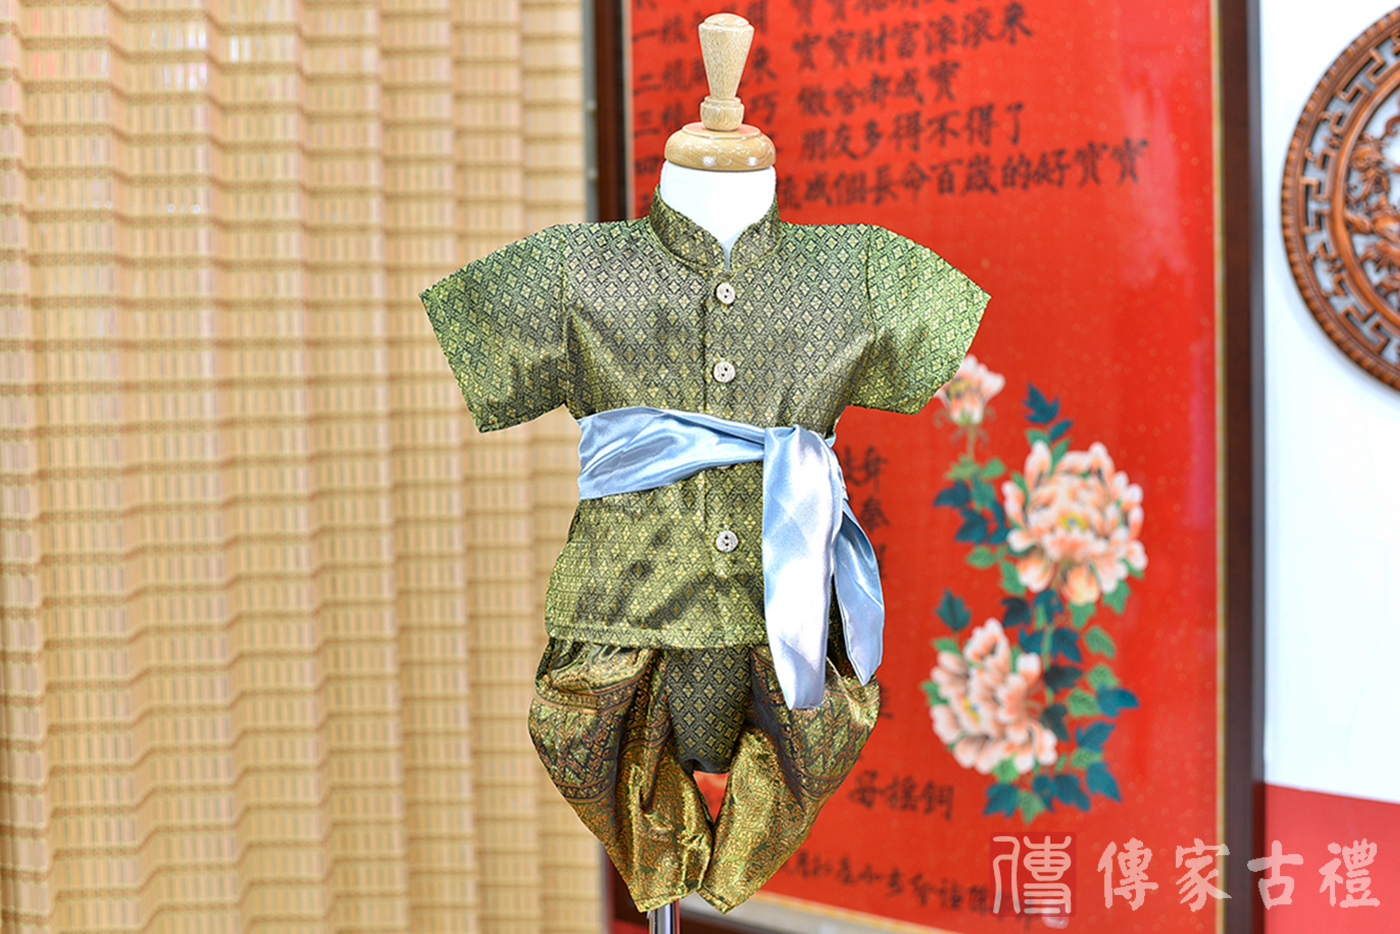 2024-02-24小孩皇室泰服古裝禮服。橄欖綠泰國傳統圖騰織紋的上衣搭配相同圖騰褲裝的泰式古裝禮服。照片集